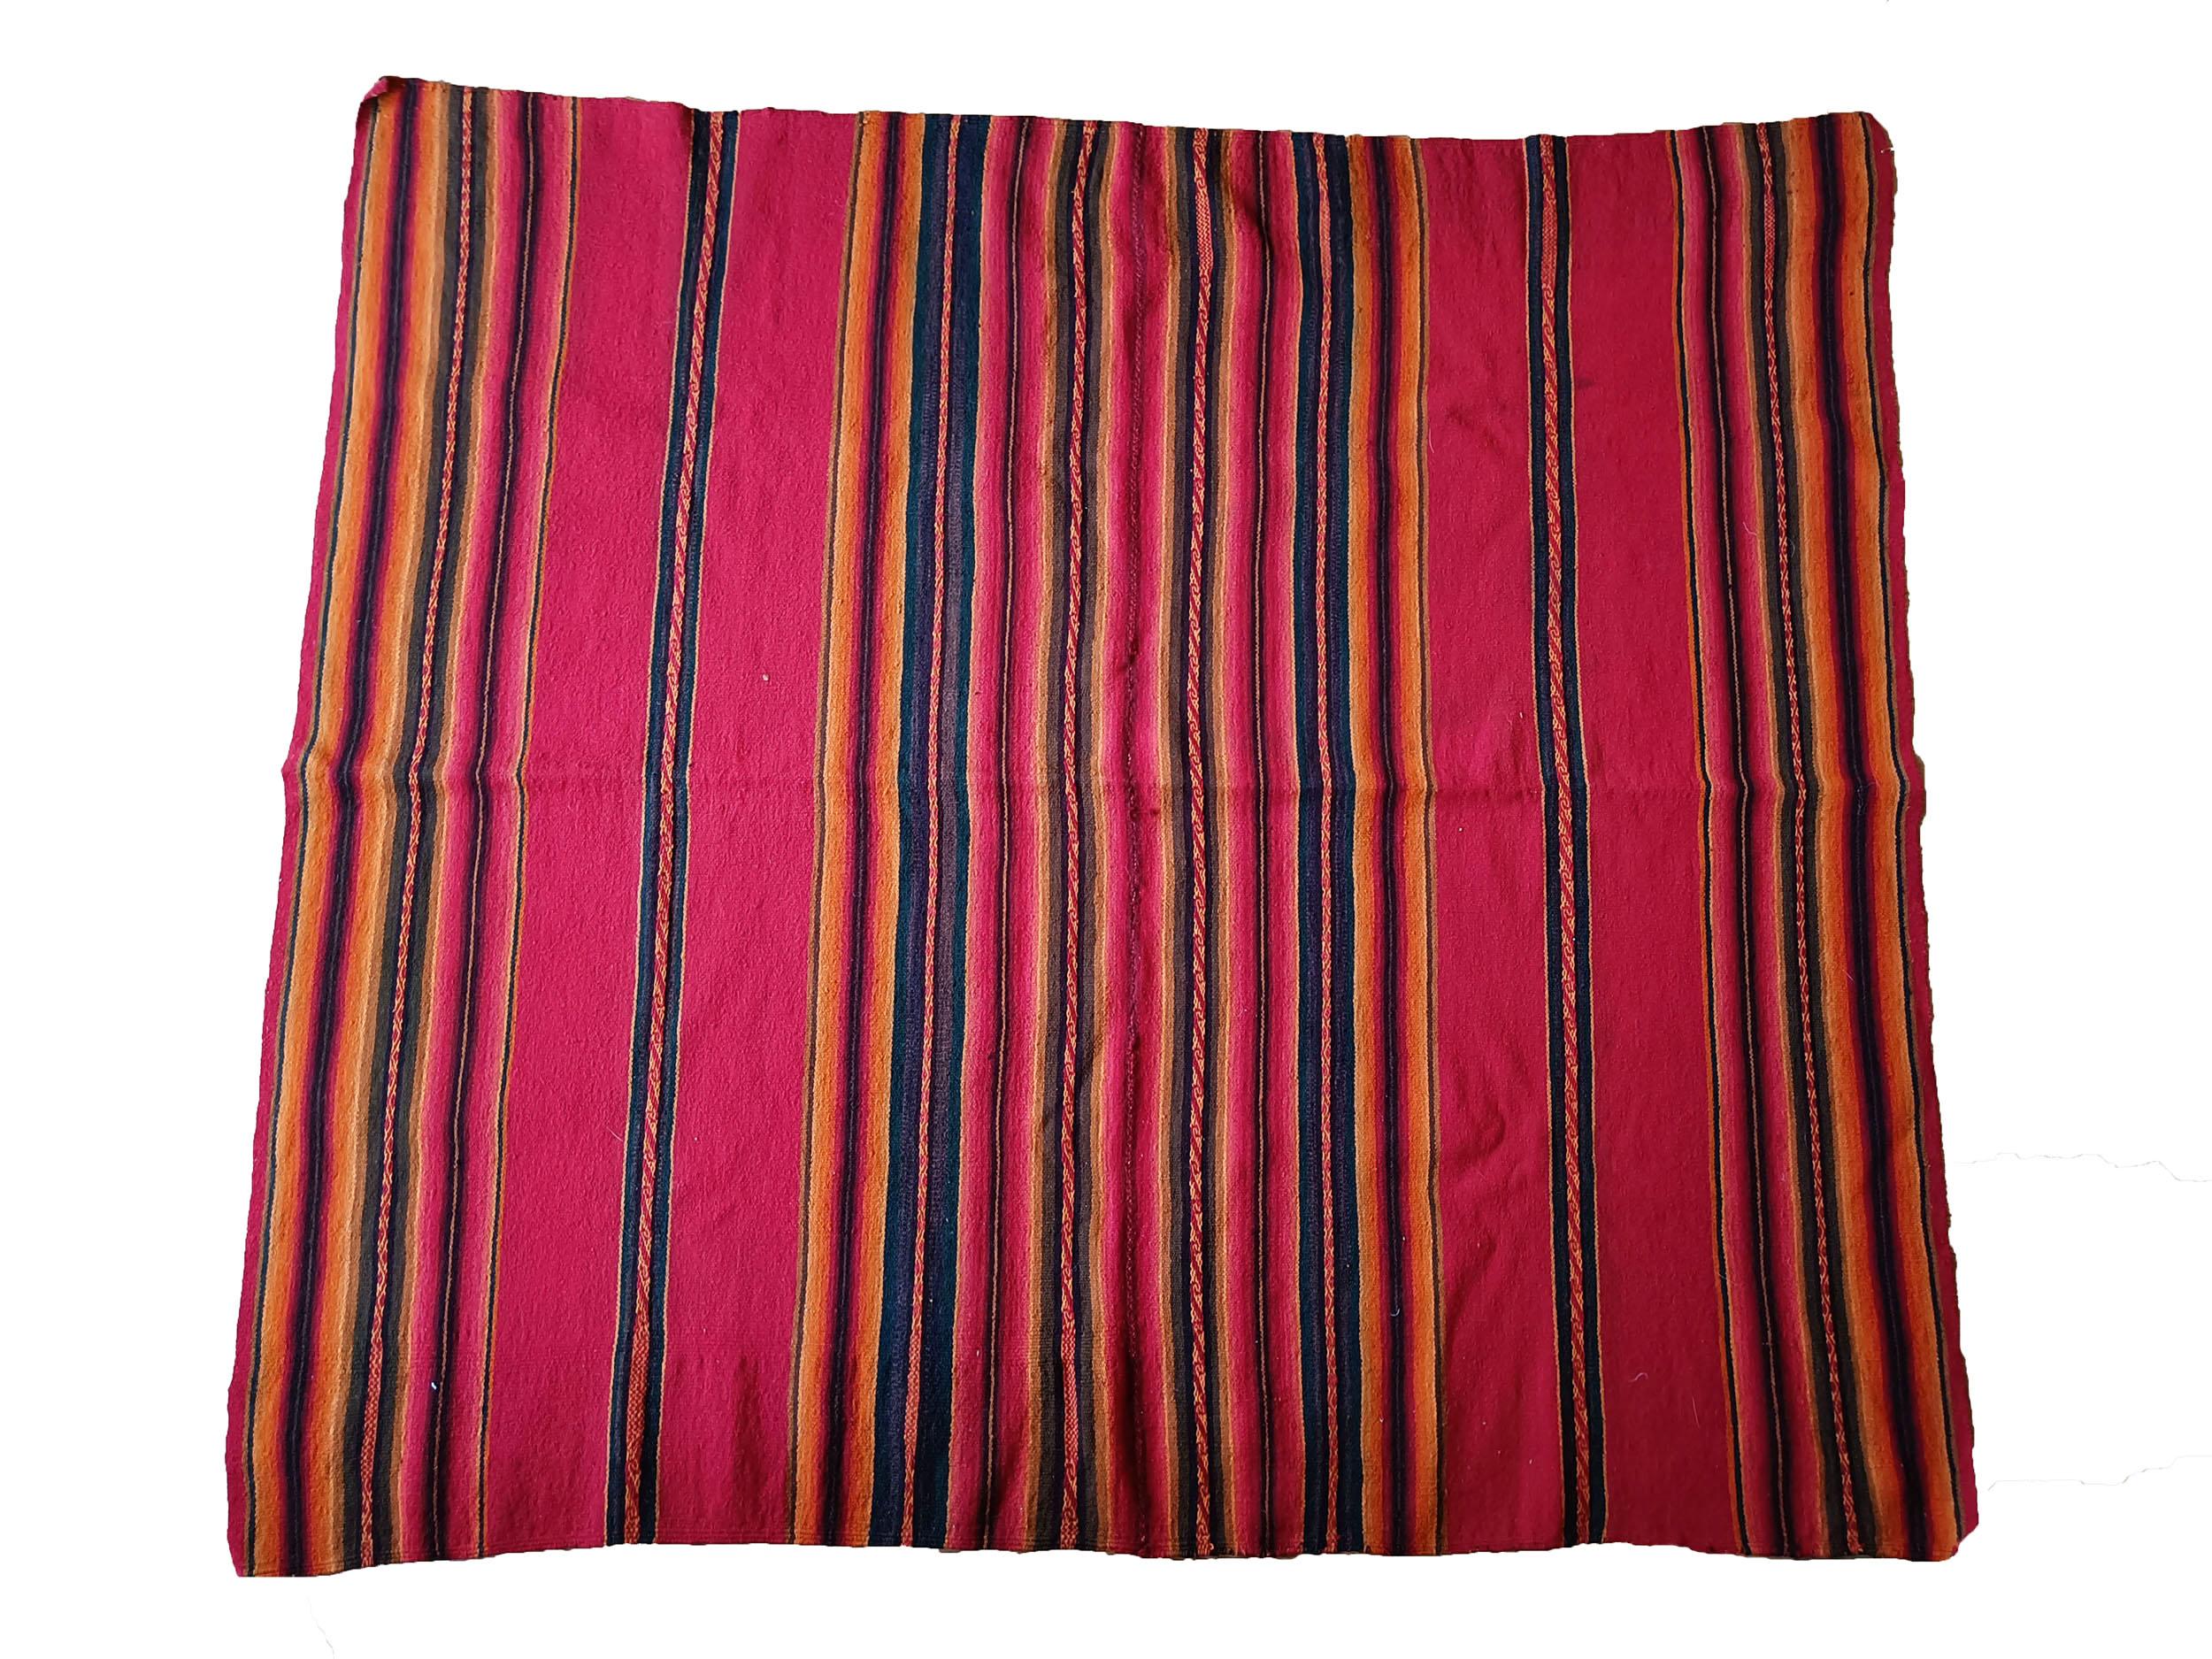 Vintage Andean Peruvian Manta Cloth South American Vintage Textiles.
Ein sehr feines Vintage Manta Tuch aus den hohen Anden von Peru gewebt in Kame-Lid Faser (Lama Wolle )schön ausgeführt in natürlichen Farben gefärbt 
Guter Zustand, Zeitraum 1960er